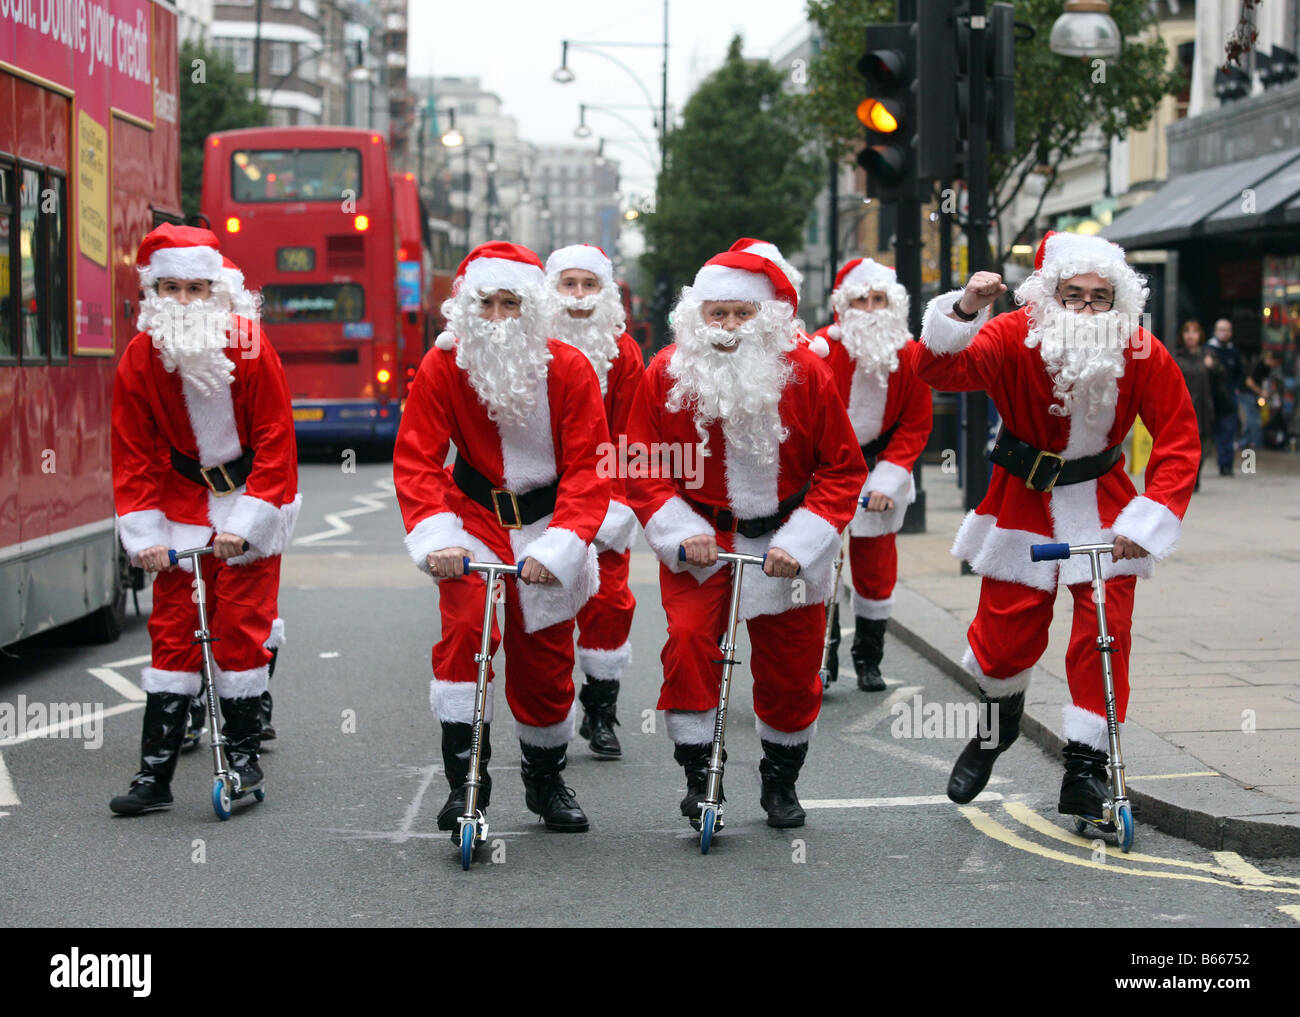 Weihnachtsmänner auf Rollern übernehmen s West End in London Verkehr kostenlos Shopping-Tag angekündigt für 6. Dezember 2008 starten Stockfoto